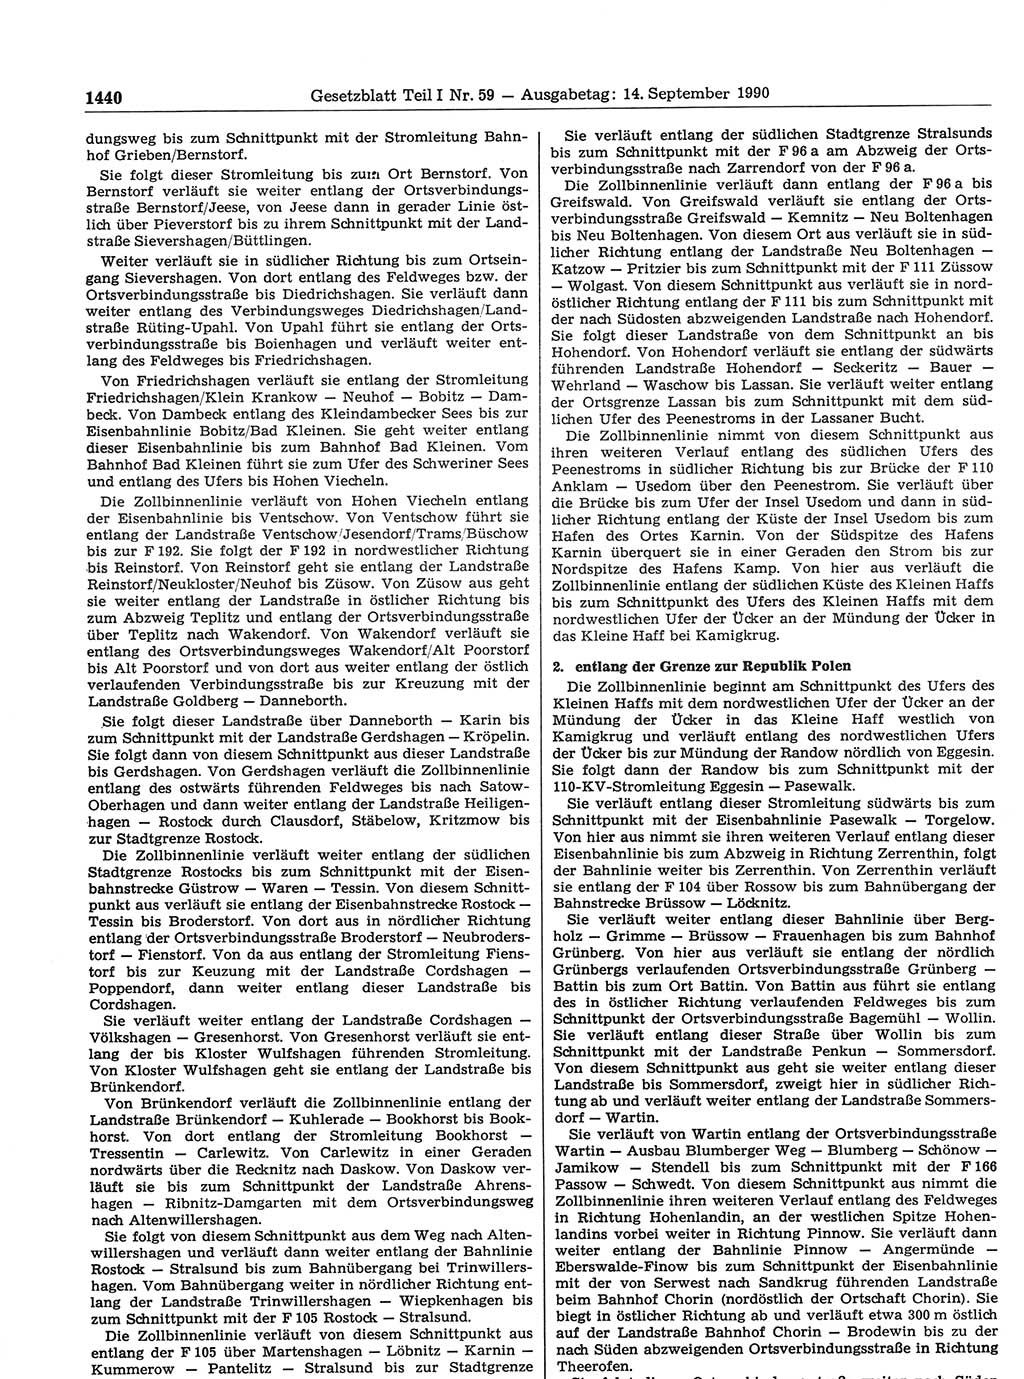 Gesetzblatt (GBl.) der Deutschen Demokratischen Republik (DDR) Teil Ⅰ 1990, Seite 1440 (GBl. DDR Ⅰ 1990, S. 1440)